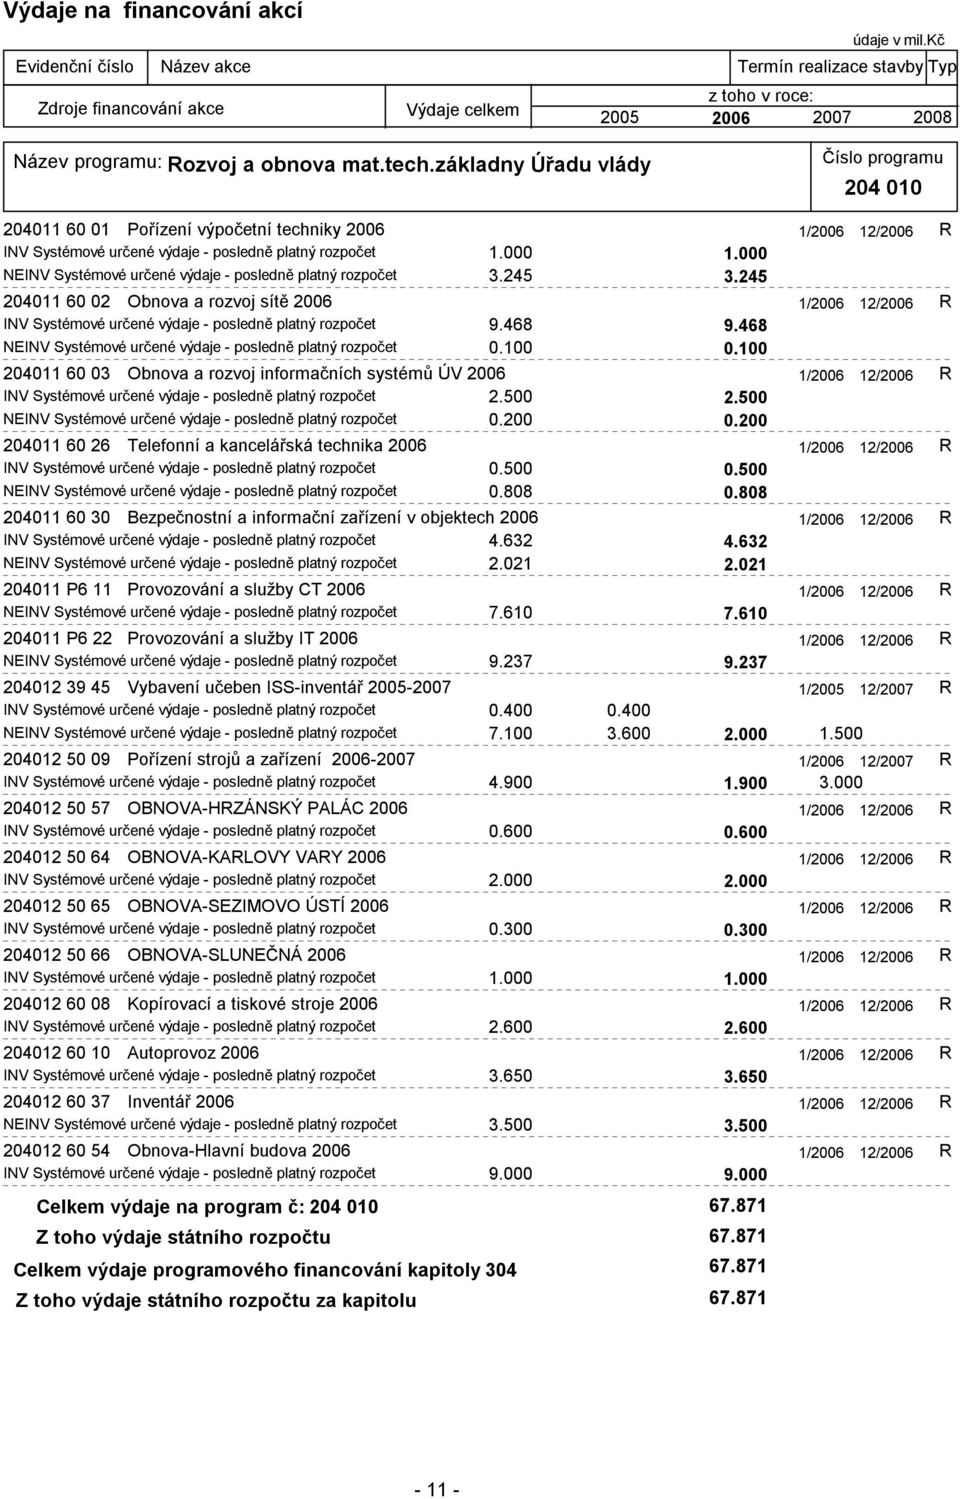 468 NEINV Systémové určené výdaje - posledně platný rozpočet 0.100 0.